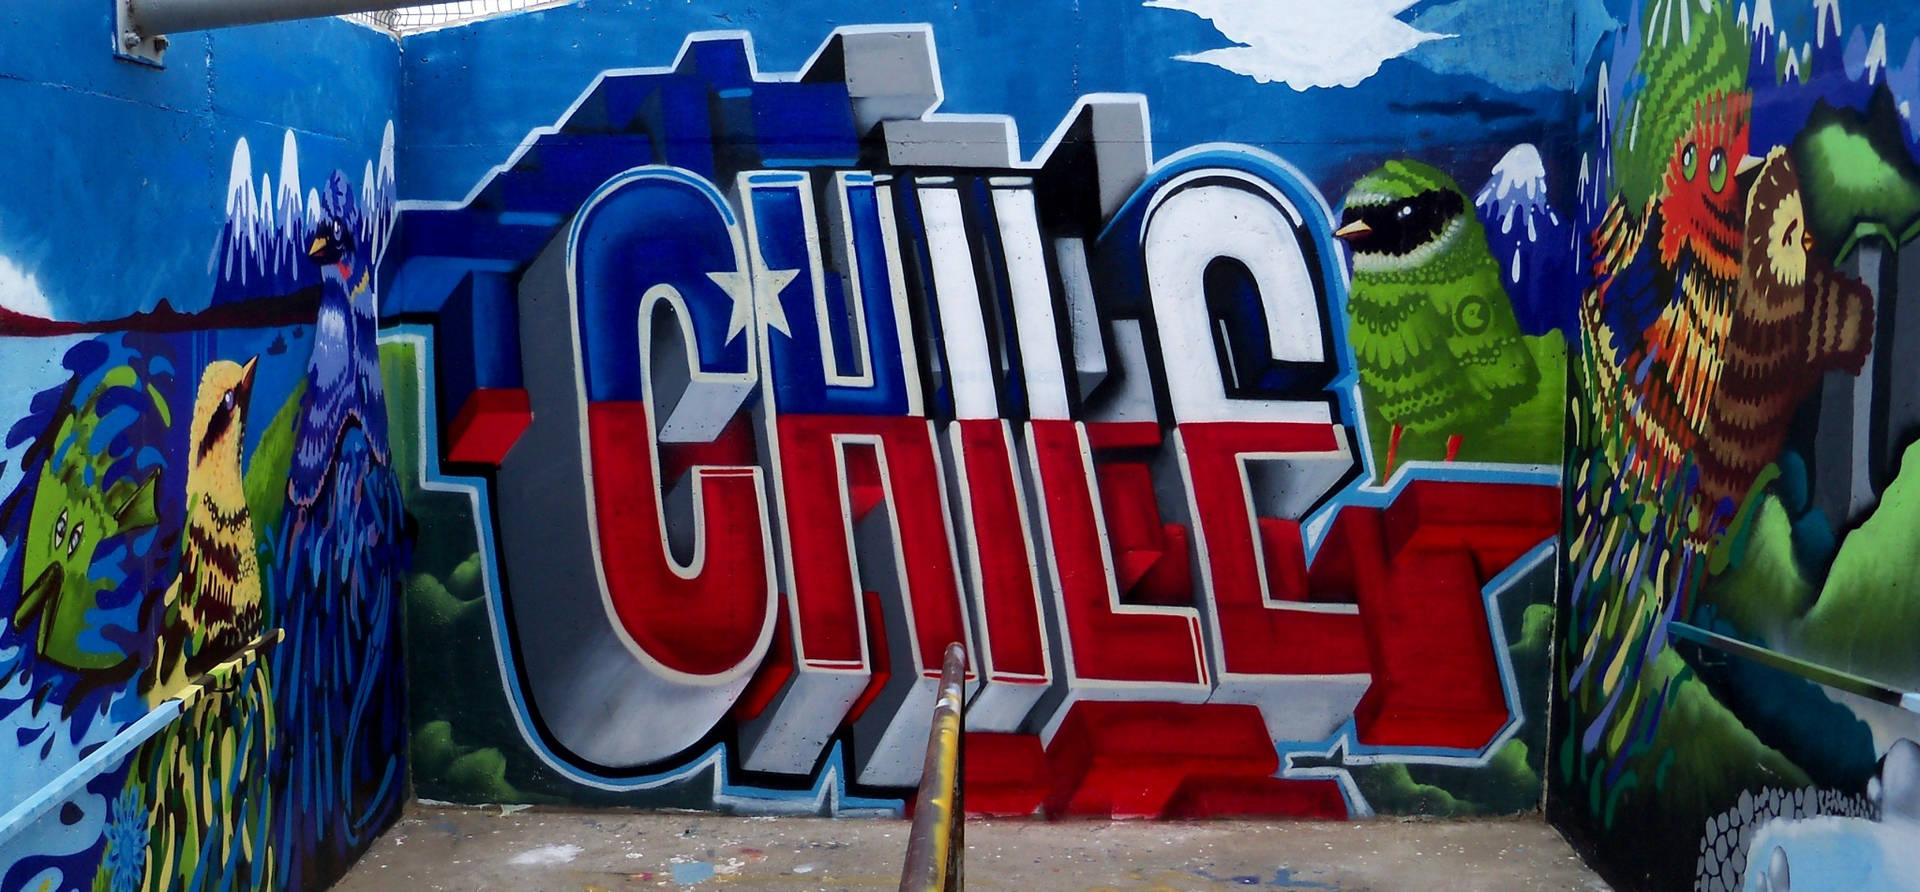 Chile Wall Graffiti Dope Laptop